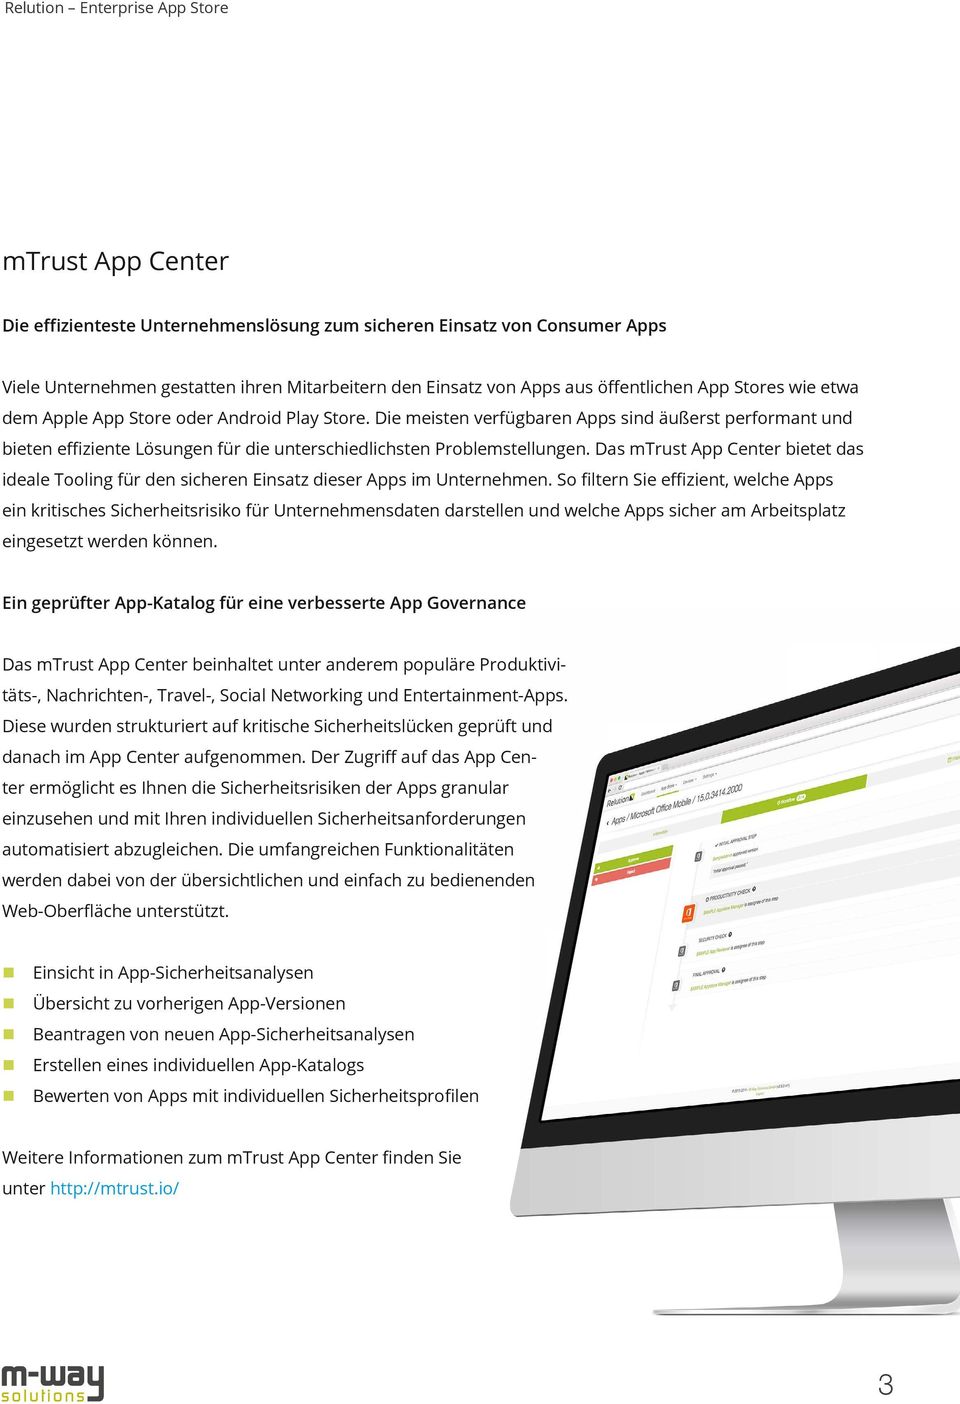 Das mtrust App Center bietet das ideale Tooling für den sicheren Einsatz dieser Apps im Unternehmen.